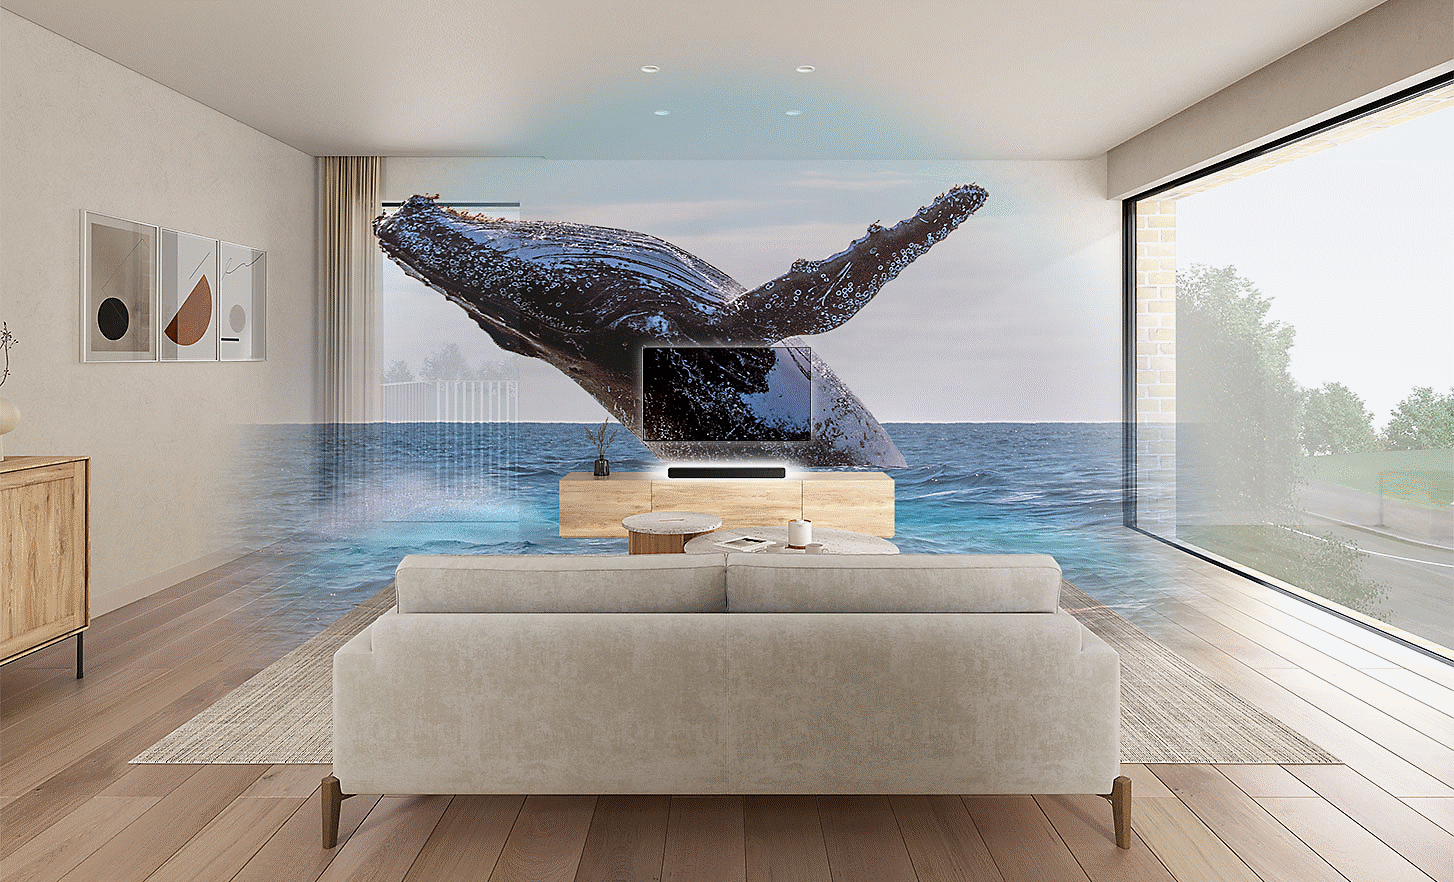 Slika dnevne sobe u sredini koje se nalaze TV i HT-S2000, dok je slika kita sa vodenim žigom prebačena preko toga